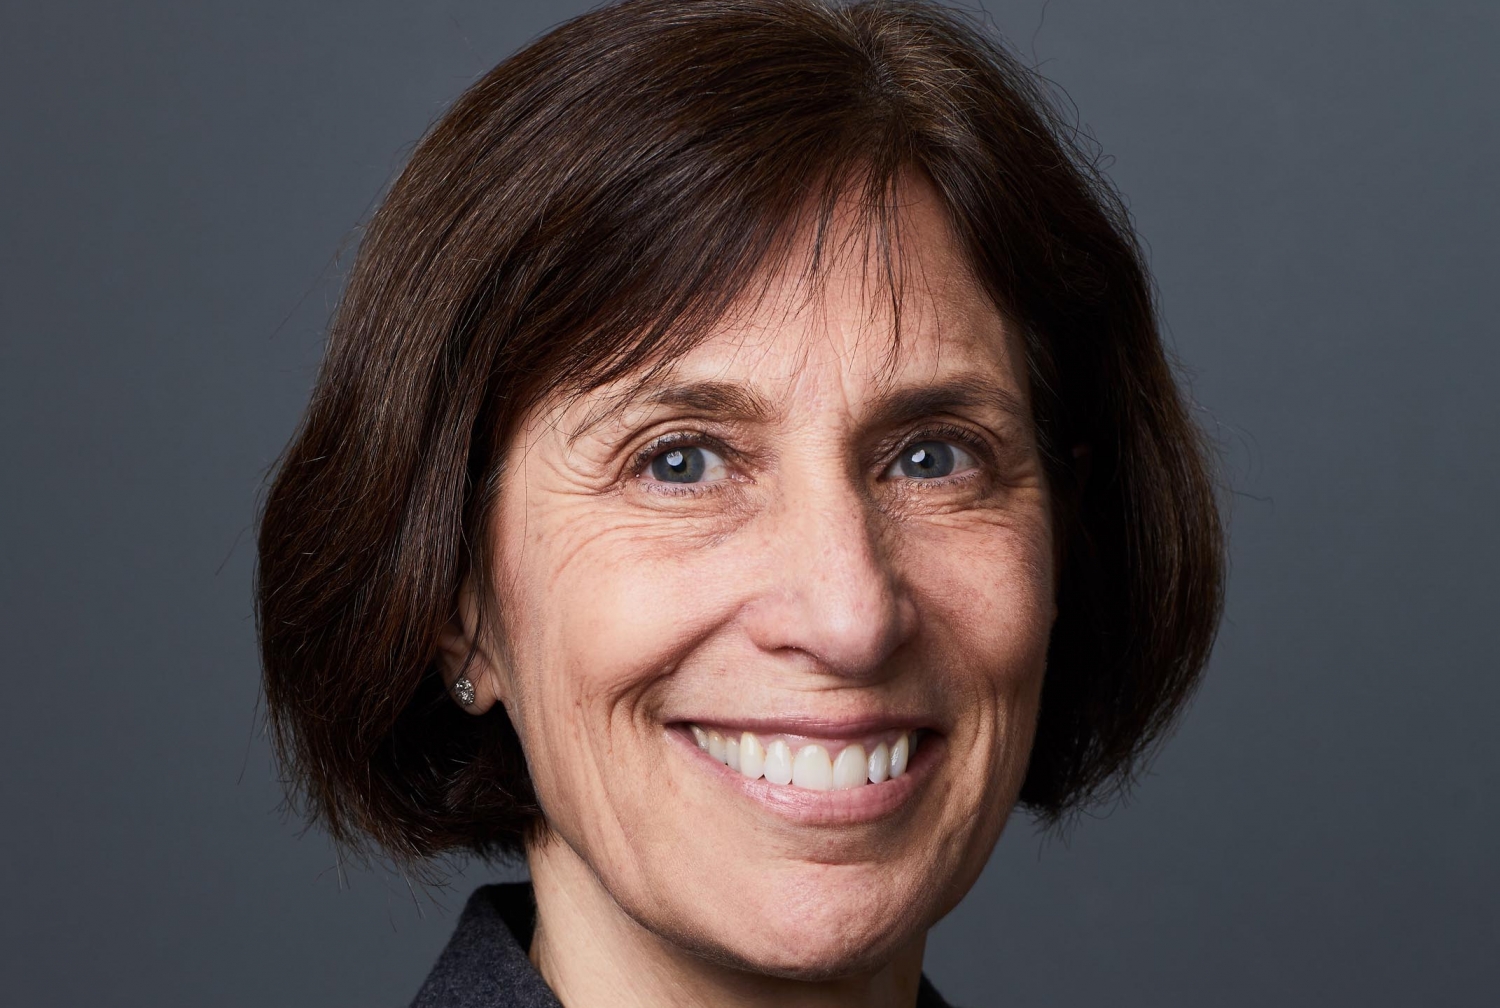 Dr. Linda M. Gerber